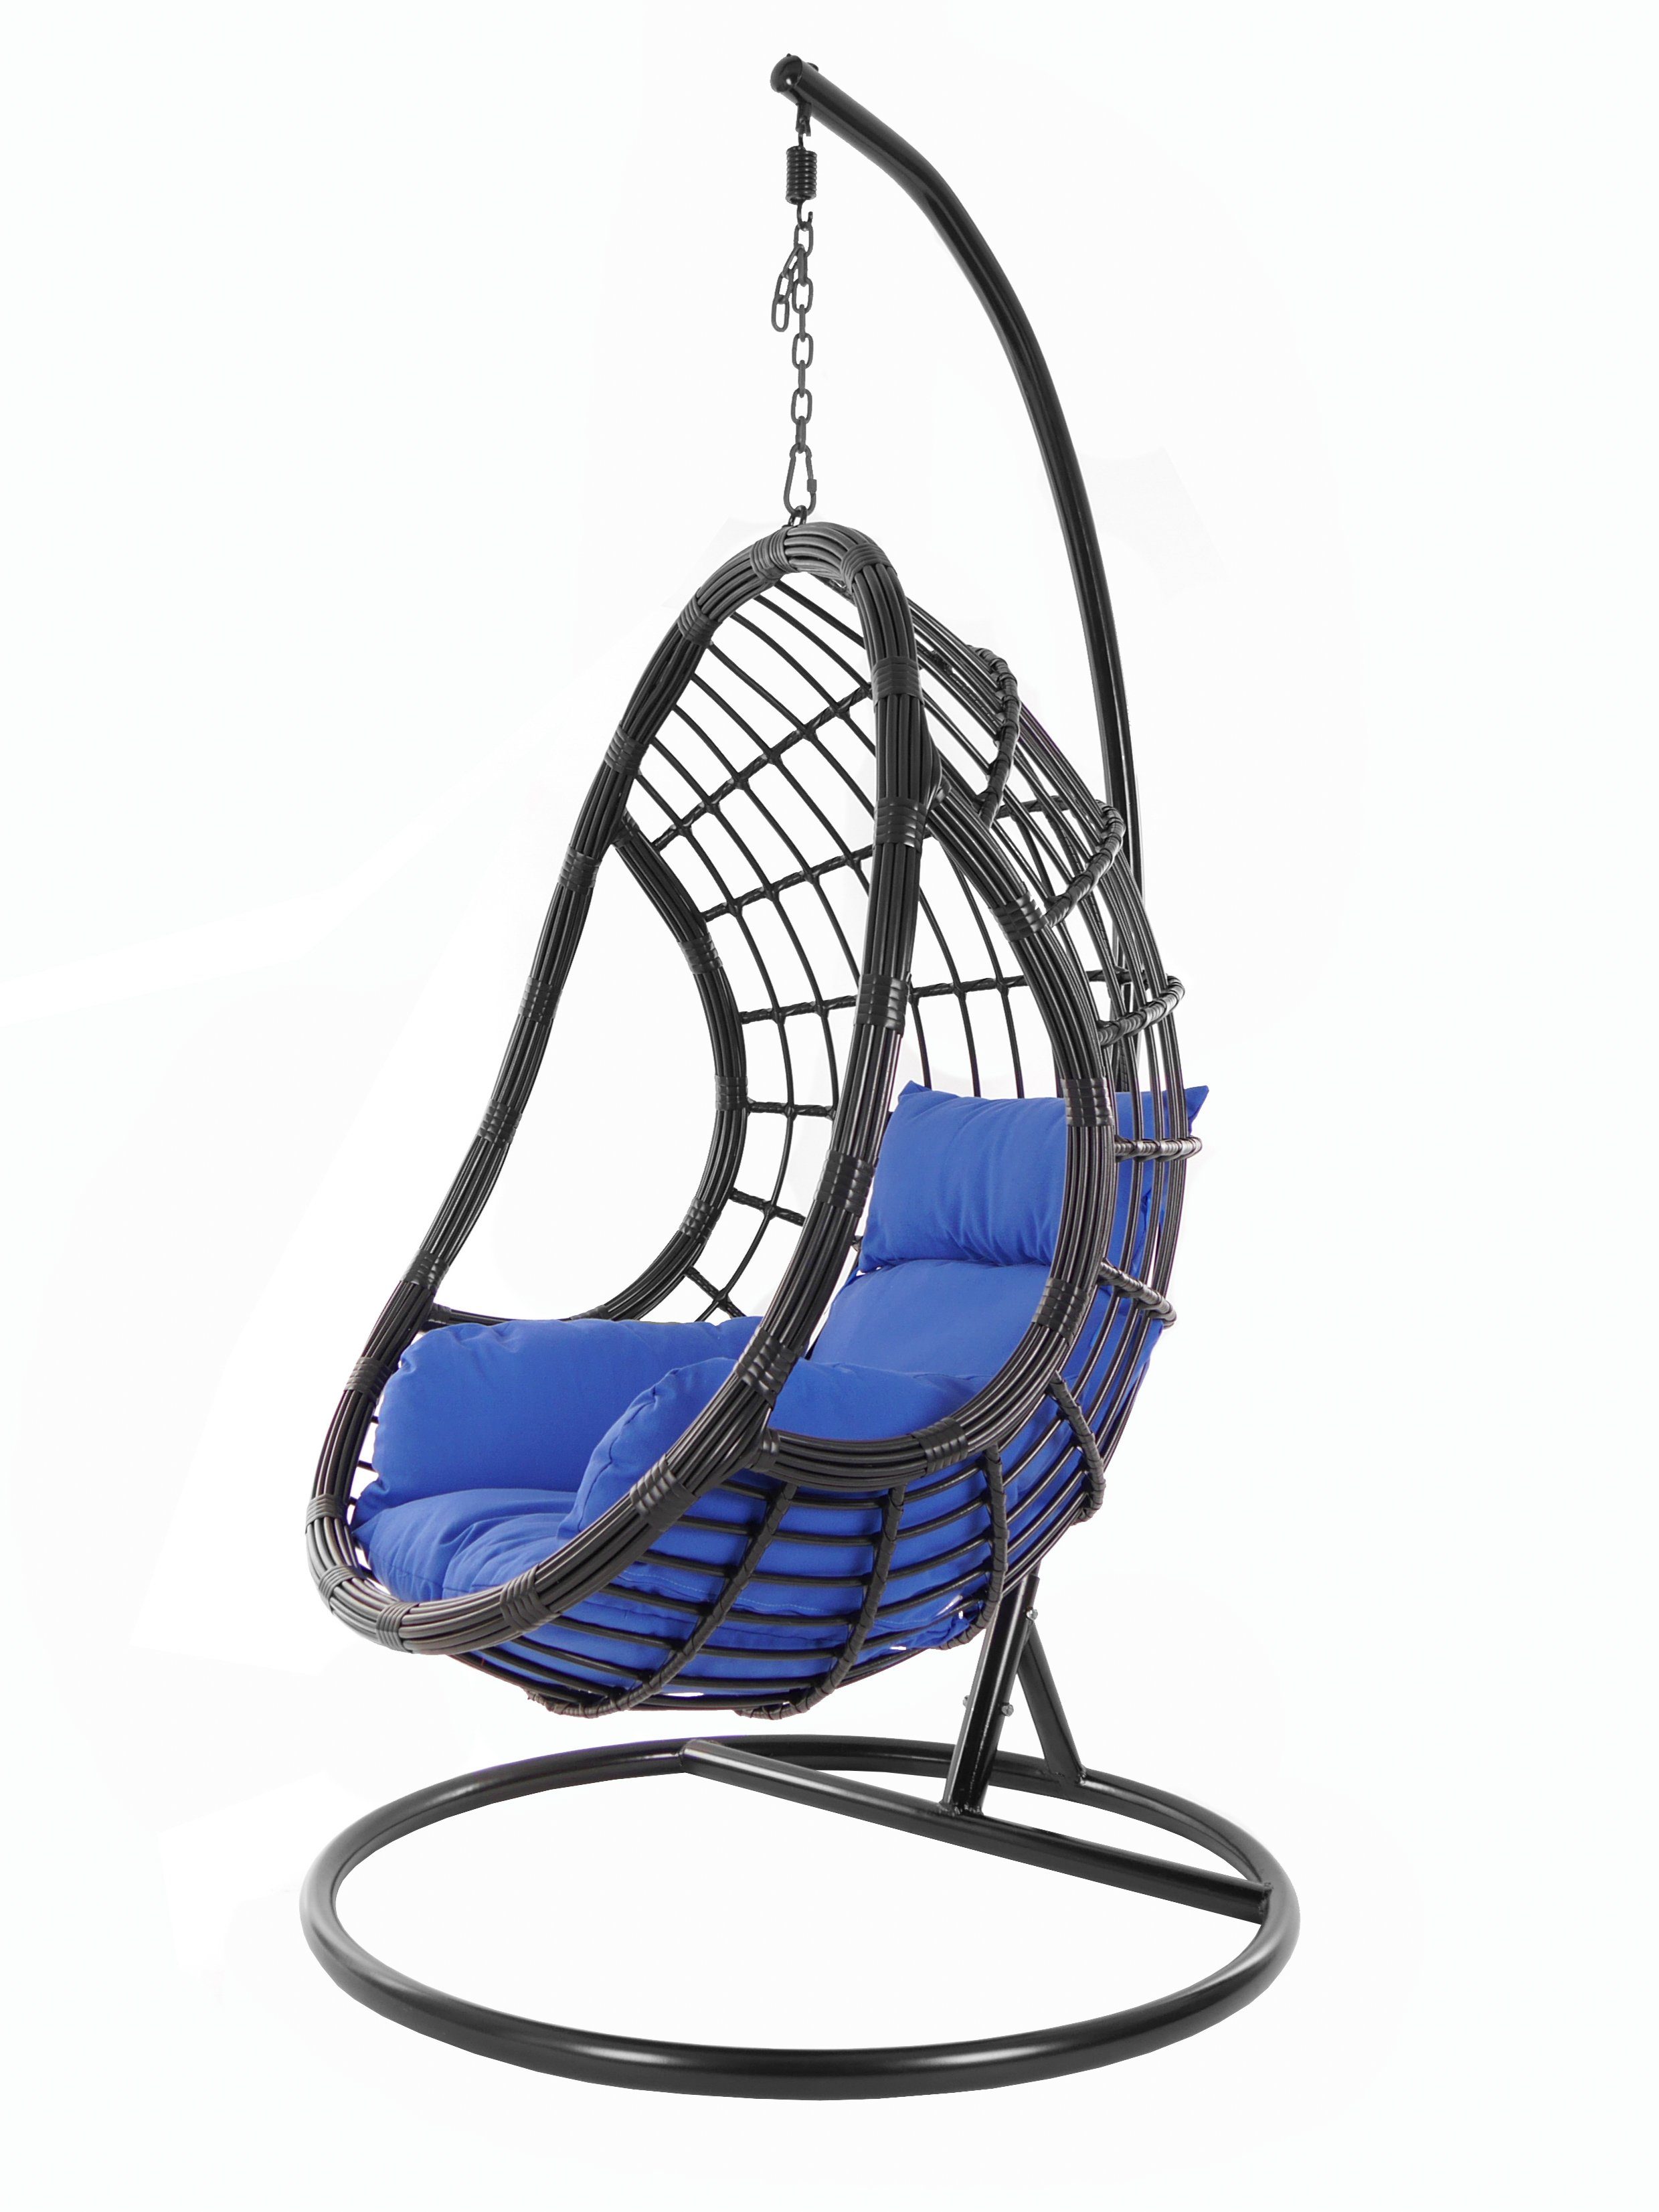 KIDEO Hängesessel PALMANOVA black, Schwebesessel, Swing Chair, Hängesessel mit Gestell und Kissen, Nest-Kissen dunkelblau (5900 admiral)